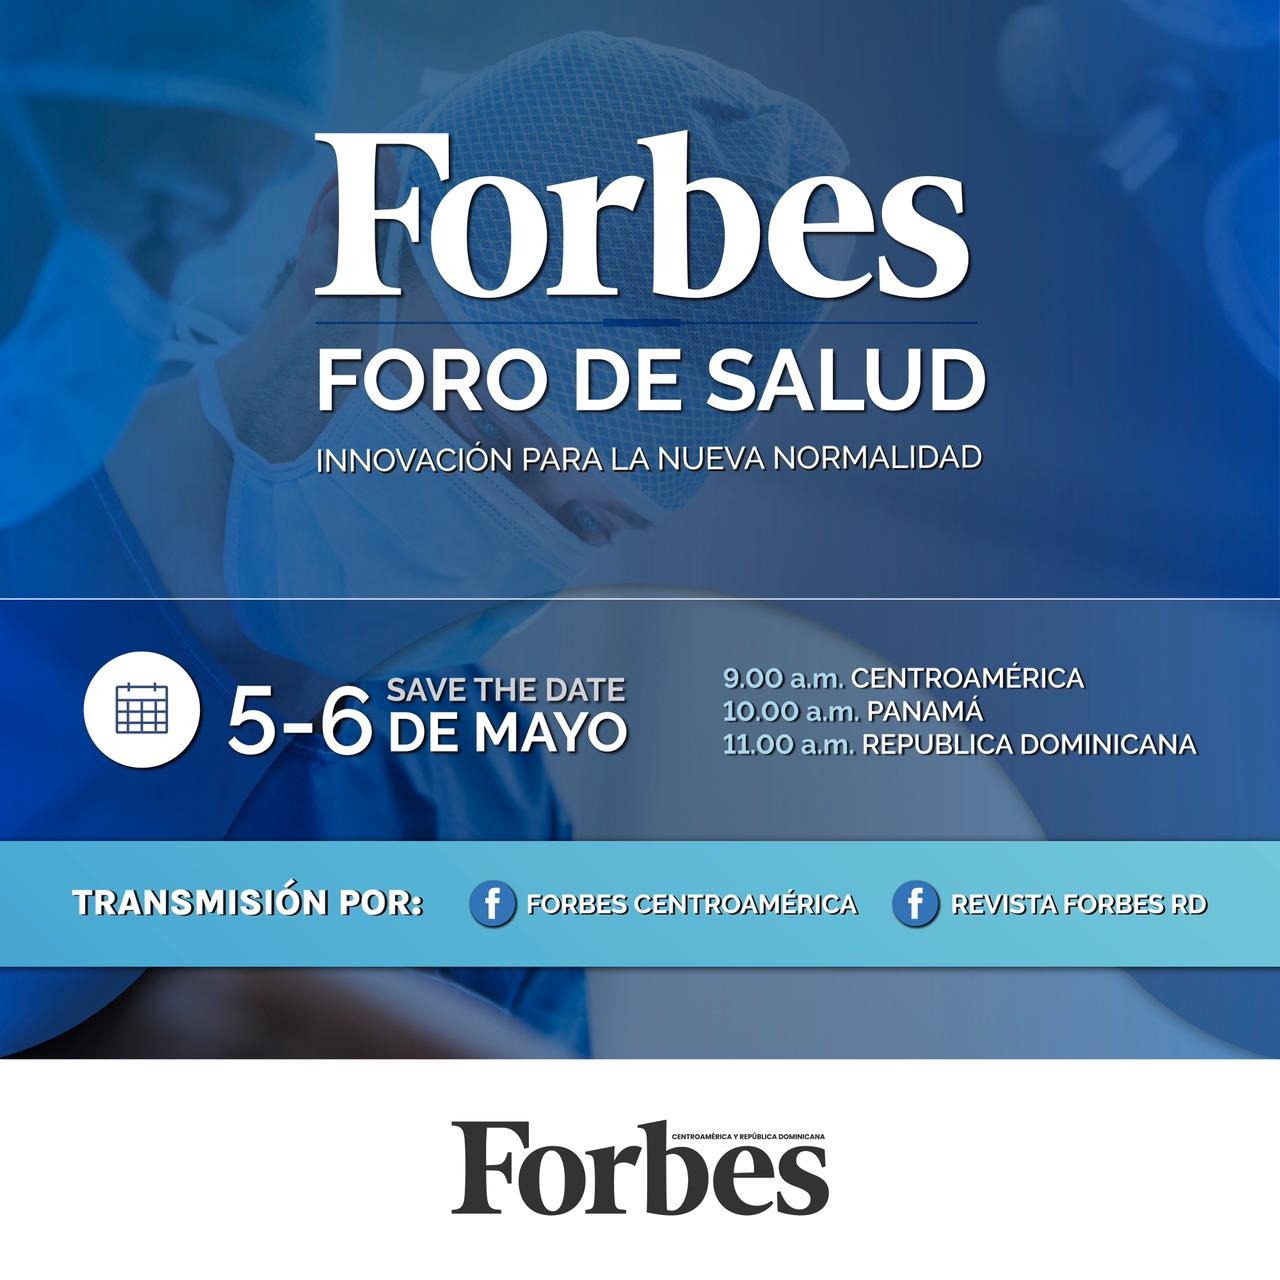 Forbes Foro de Salud 2021 Innovación para la nueva normalidad